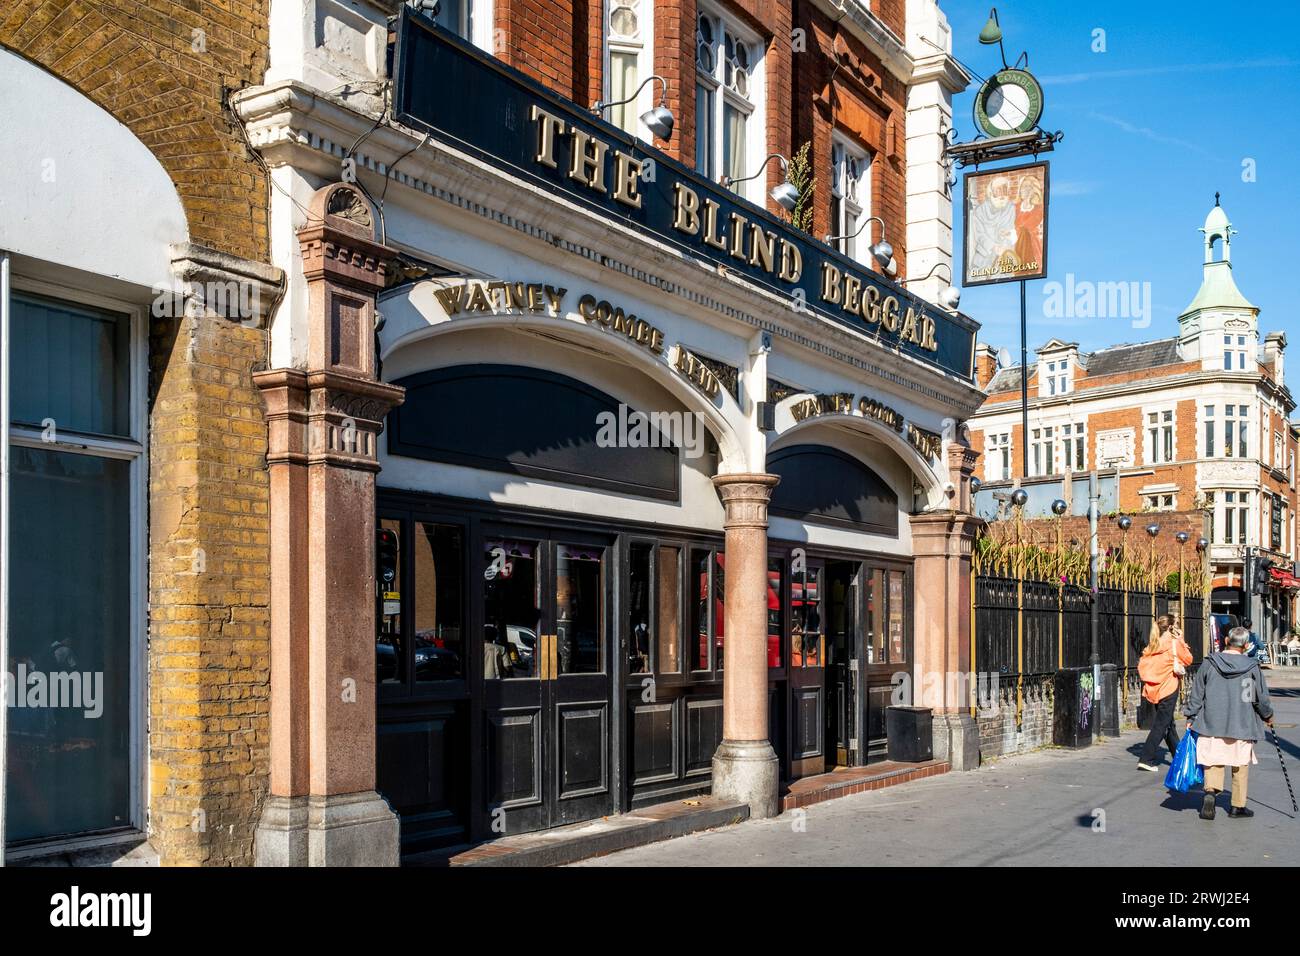 The Blind Beggar Pub, Whitechapel, Londres, Royaume-Uni. Banque D'Images